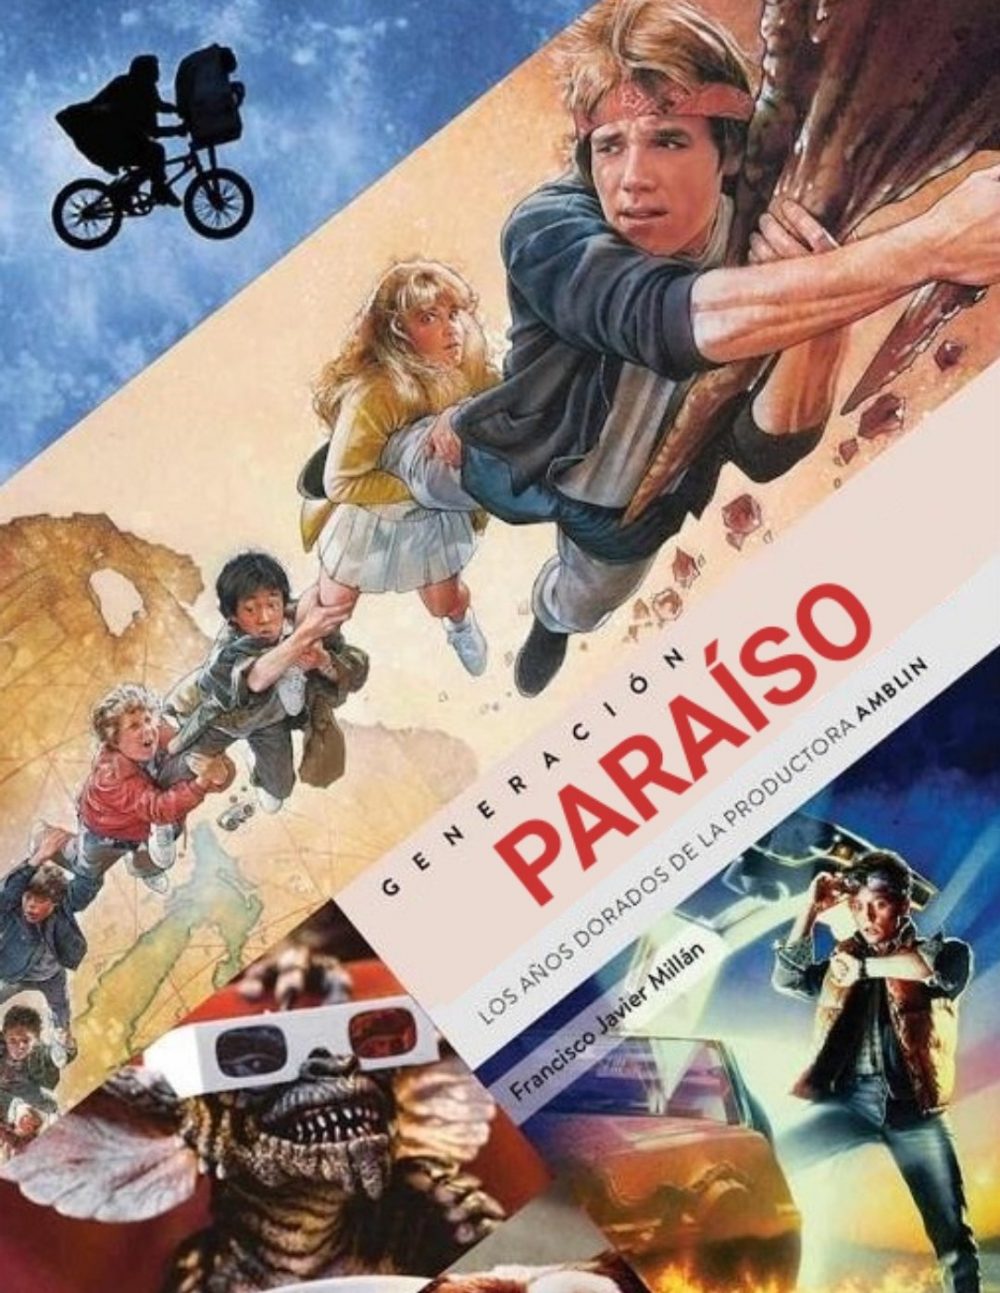 Ver y descargar Paraíso | Torrent y Movistar VHS 4K